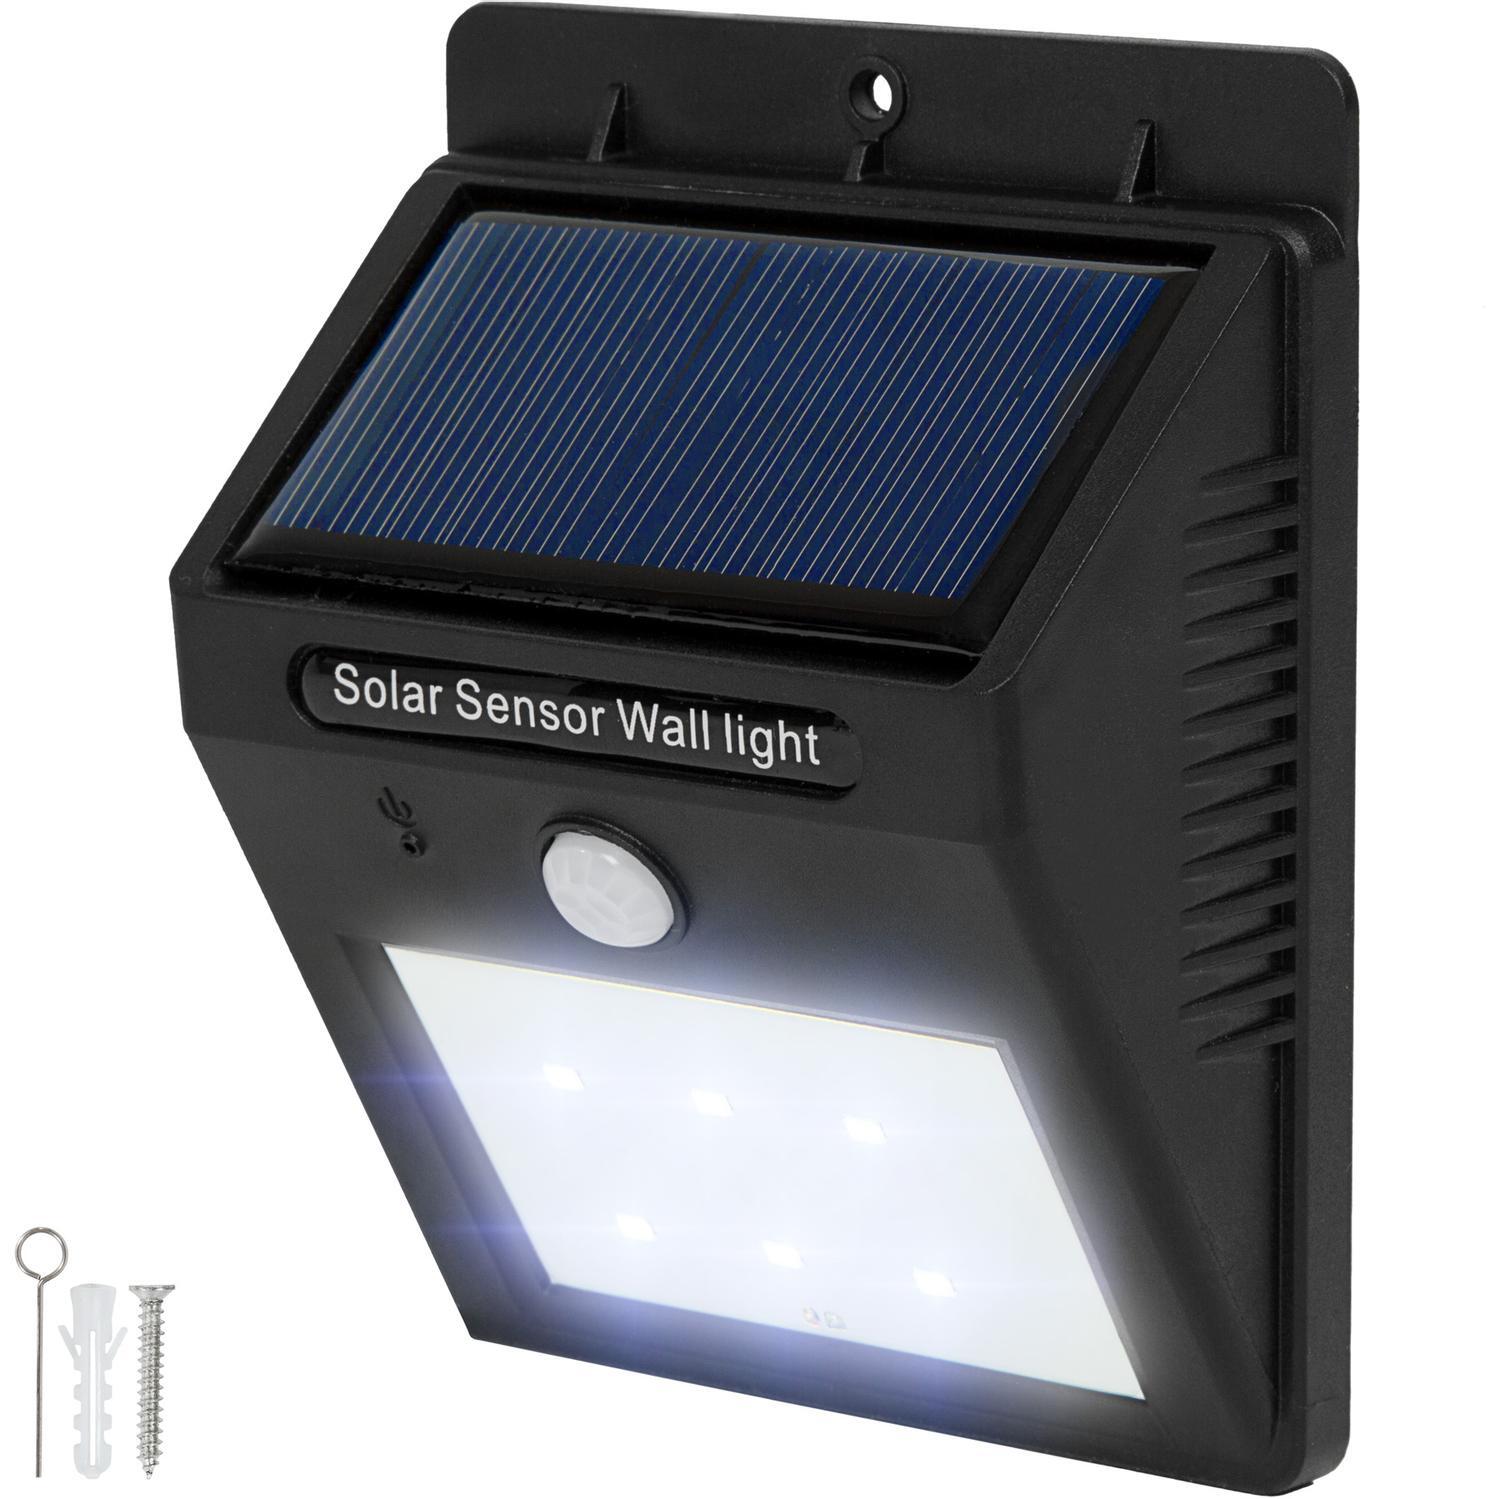 LED solcelle vegglampe med bevegelsesdetektor - svart - Elkjøp